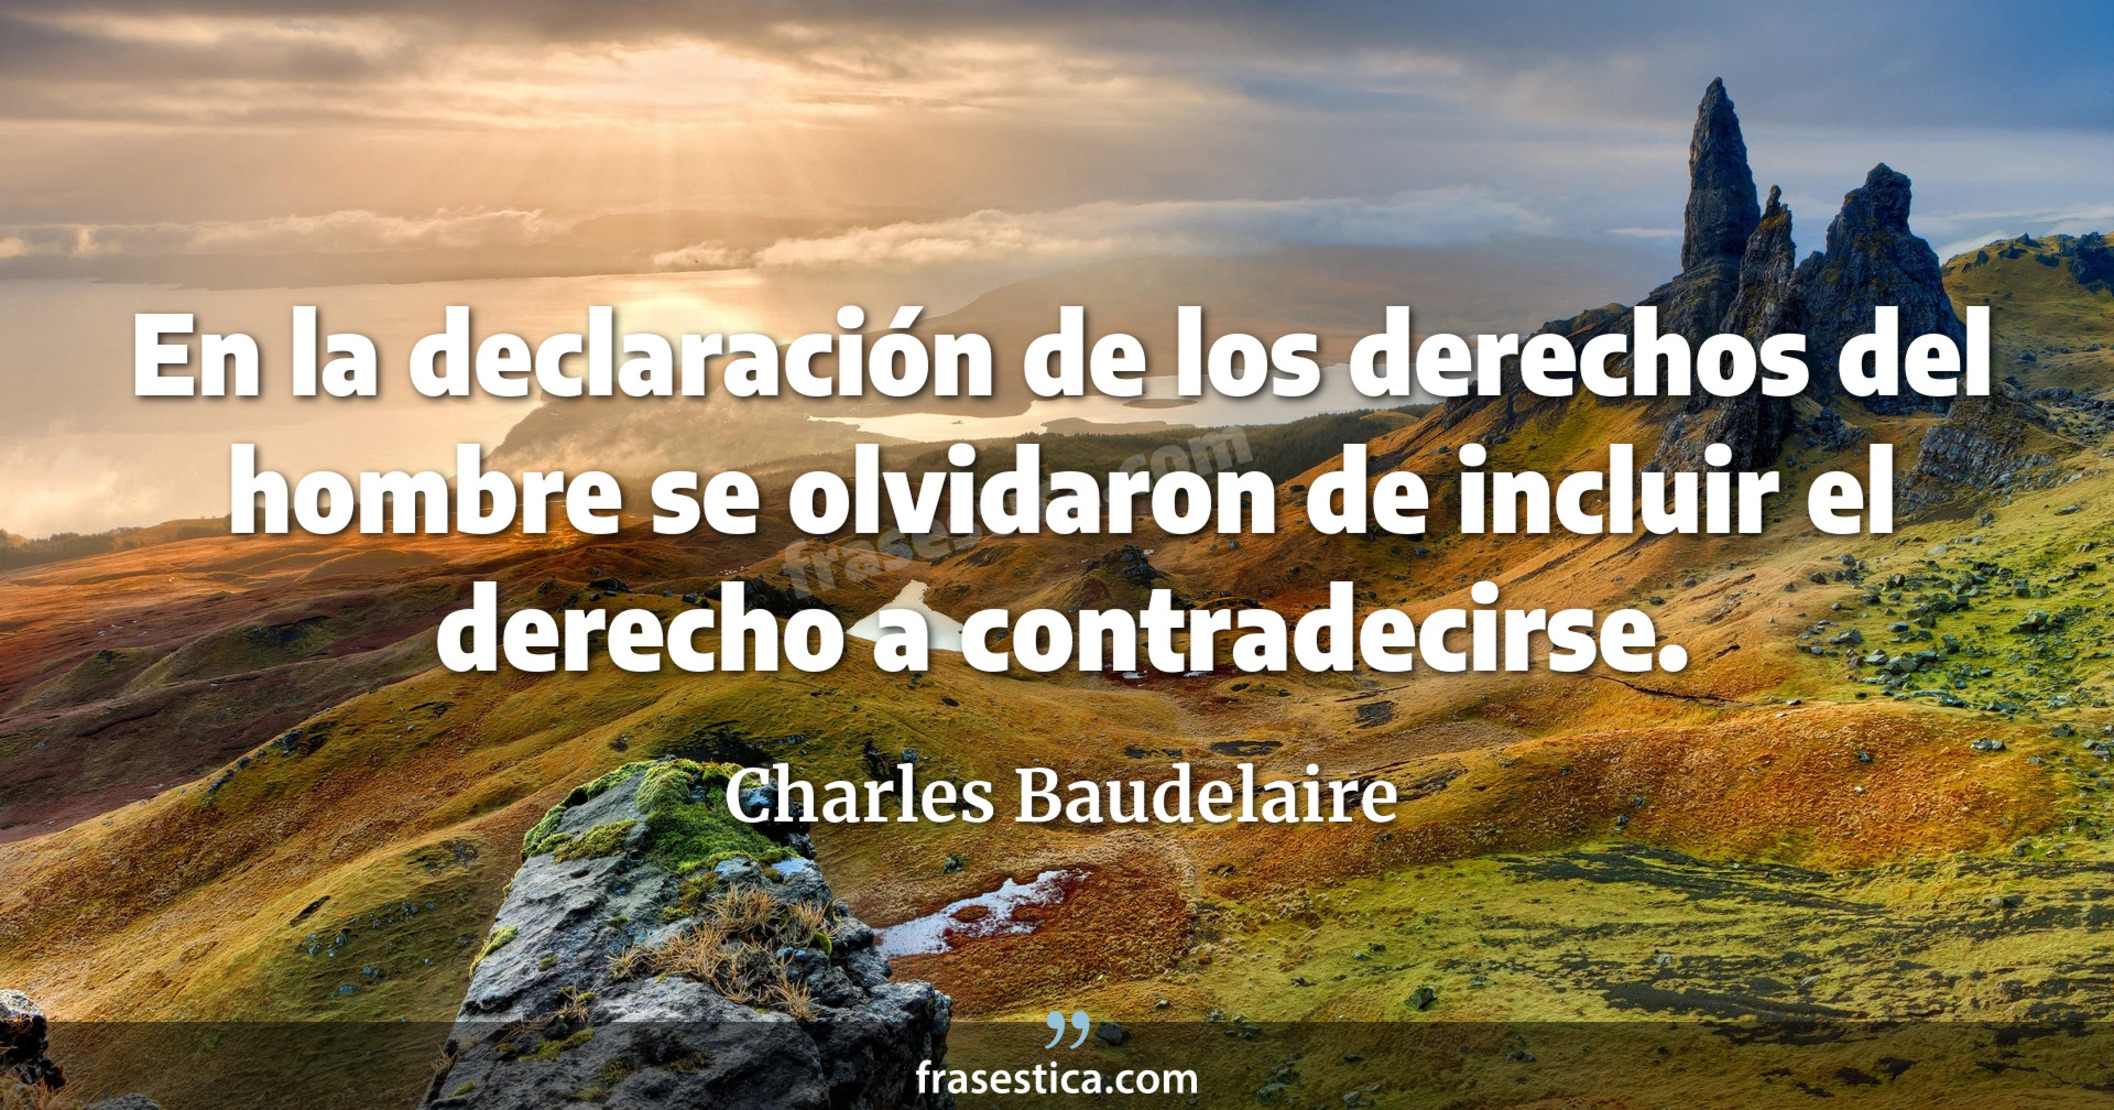 En la declaración de los derechos del hombre se olvidaron de incluir el derecho a contradecirse. - Charles Baudelaire